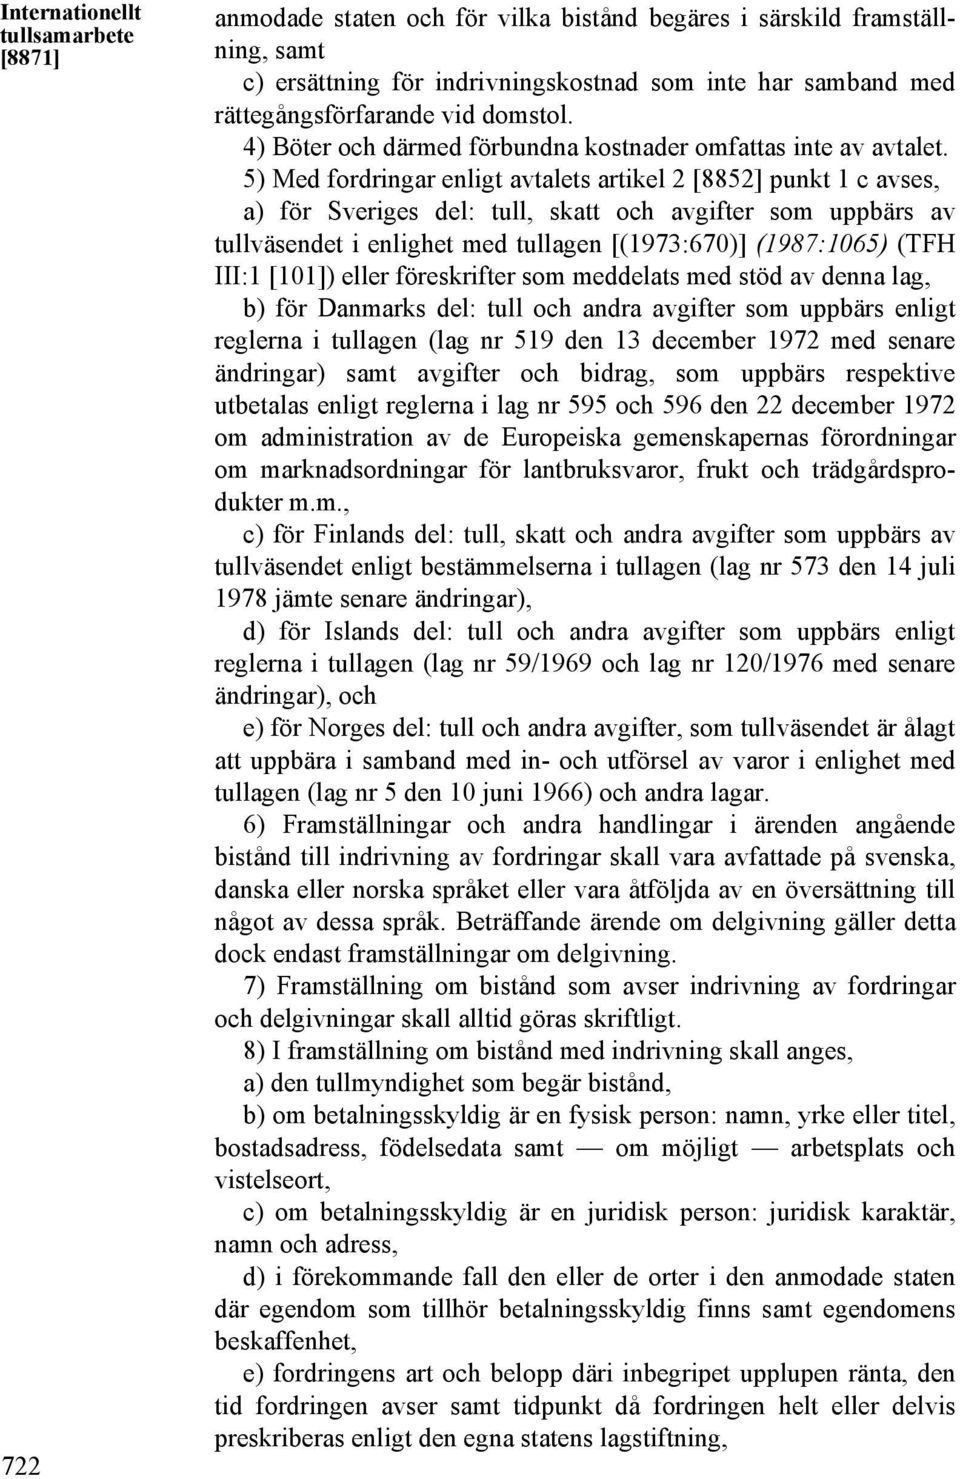 5) Med fordringar enligt avtalets artikel 2 [8852] punkt 1 c avses, a) för Sveriges del: tull, skatt och avgifter som uppbärs av tullväsendet i enlighet med tullagen [(1973:670)] (1987:1065) (TFH